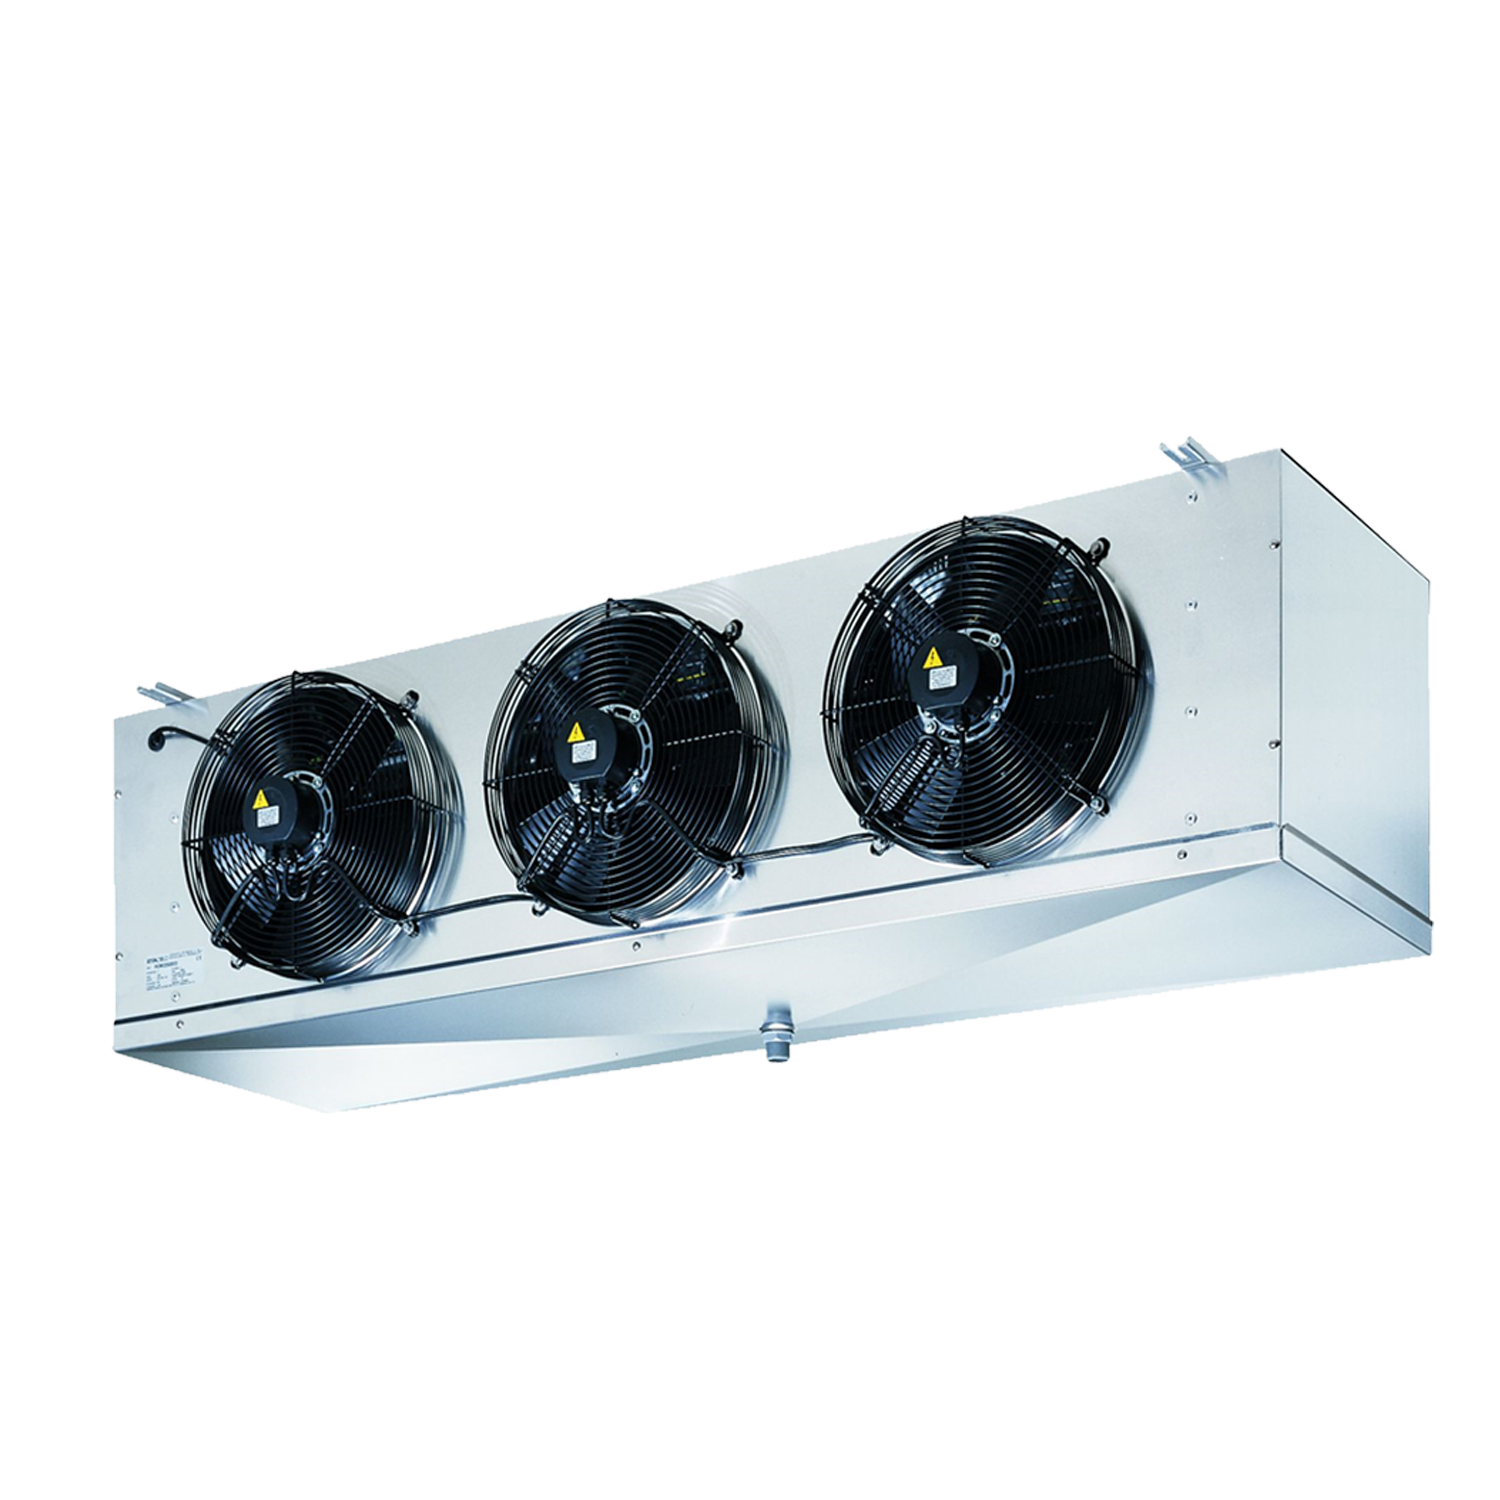 RCMX-350: Cubic ceiling evaporators with EC fans